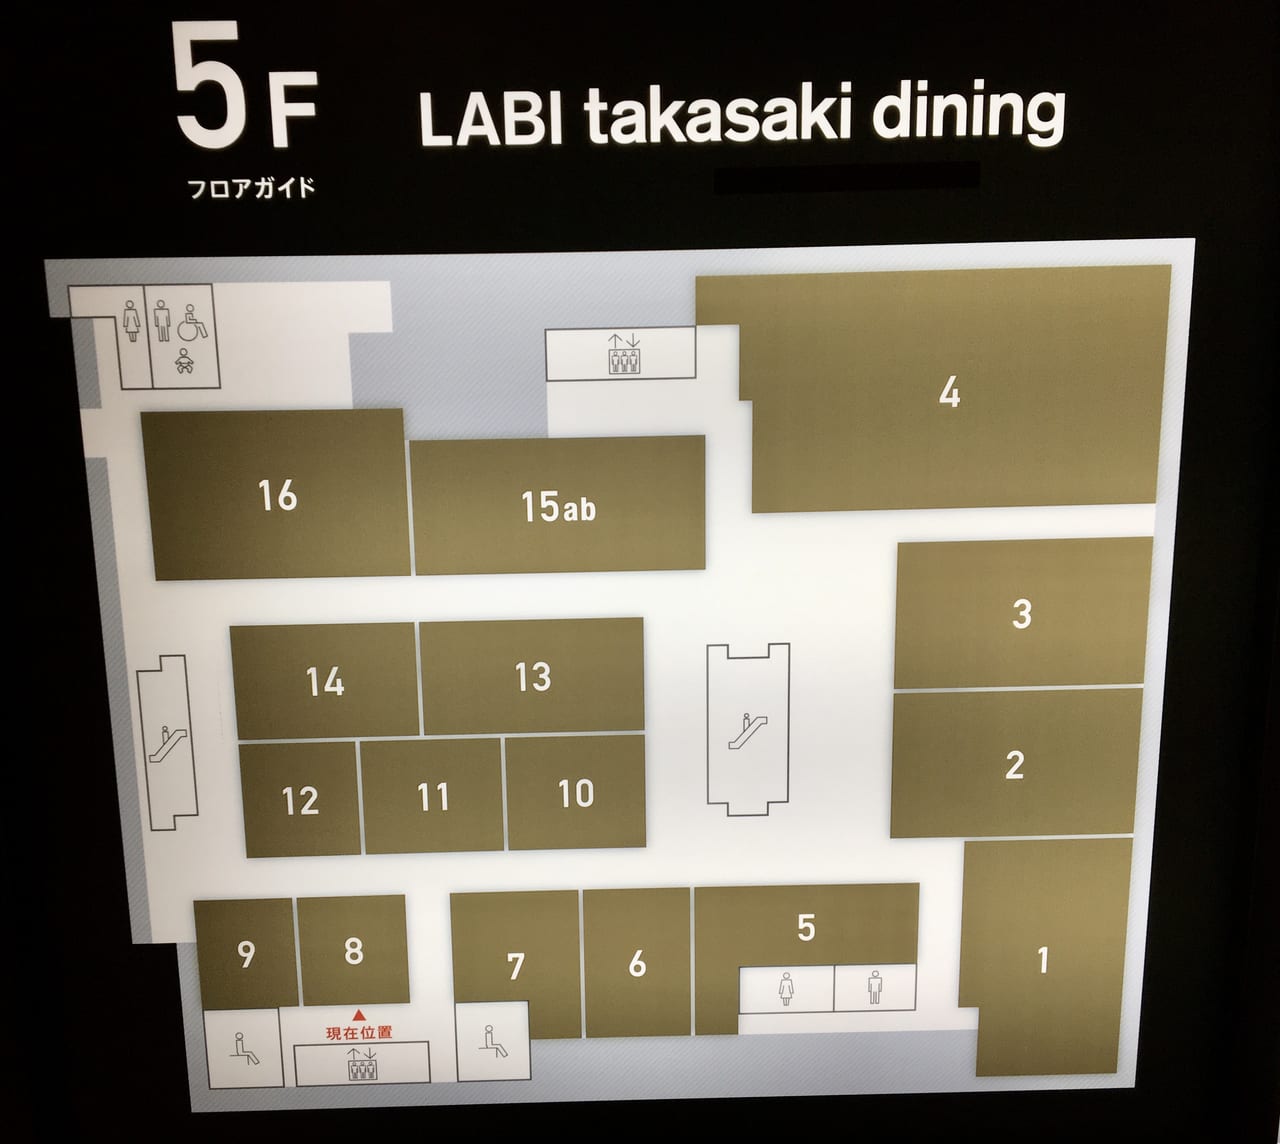 ヤマダ電機LABI1高崎飲食店フロアマップ